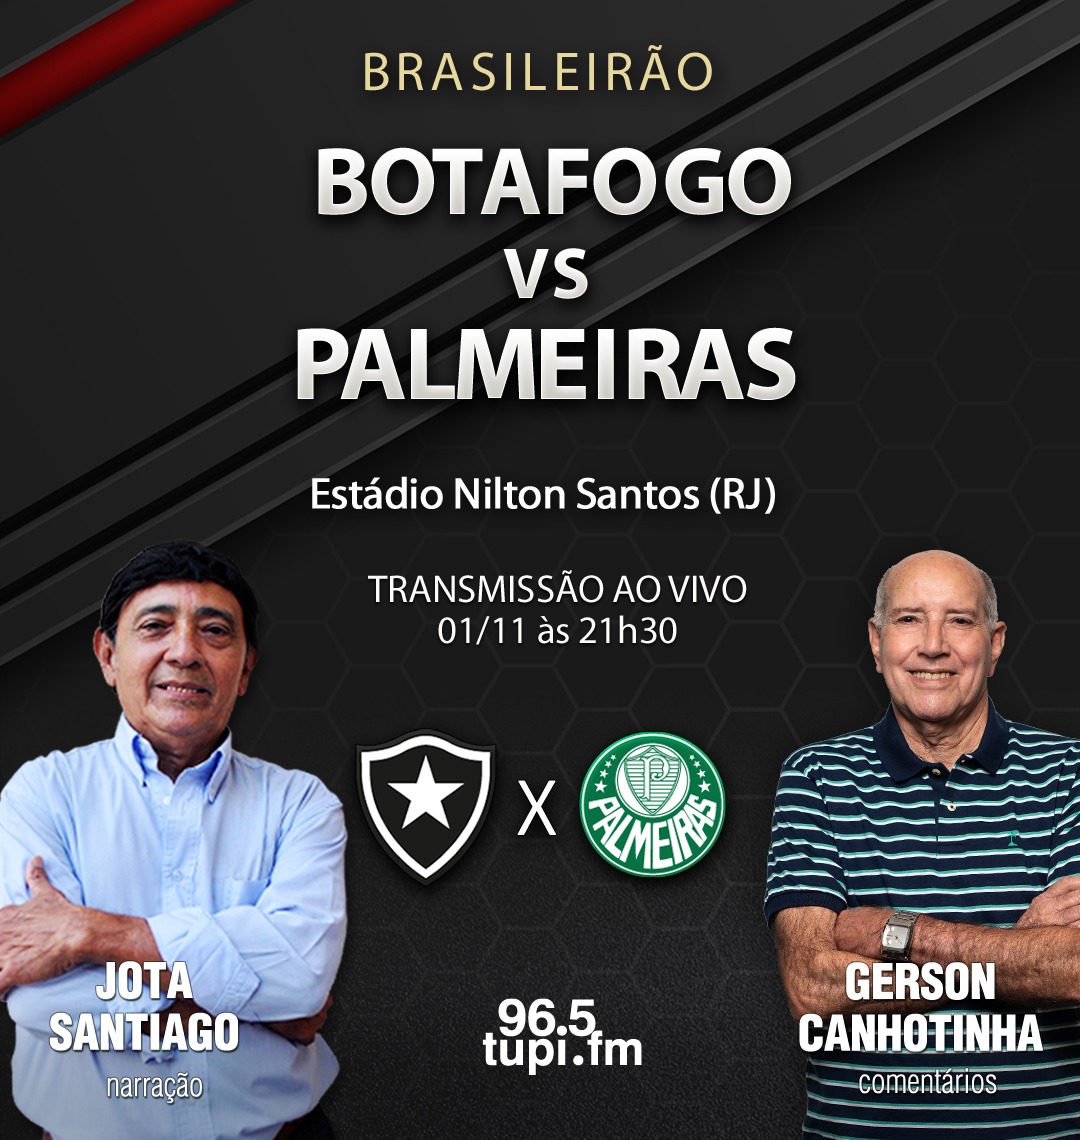 Onde assistir Goiás x Palmeiras AO VIVO pelo Campeonato Brasileiro